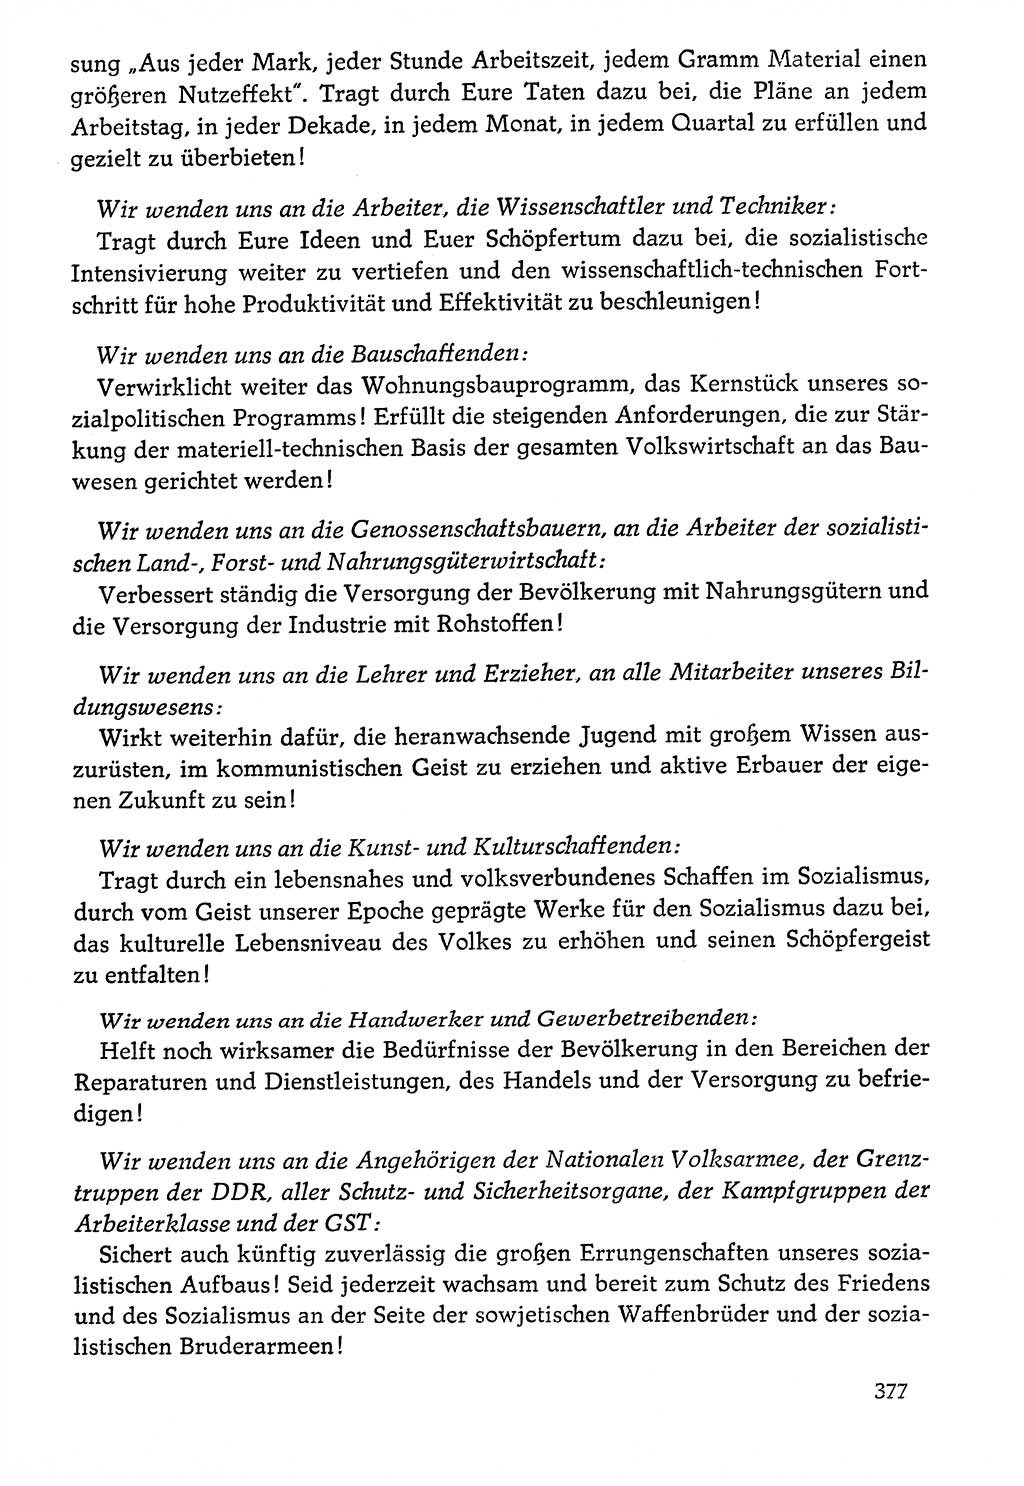 Dokumente der Sozialistischen Einheitspartei Deutschlands (SED) [Deutsche Demokratische Republik (DDR)] 1976-1977, Seite 377 (Dok. SED DDR 1976-1977, S. 377)